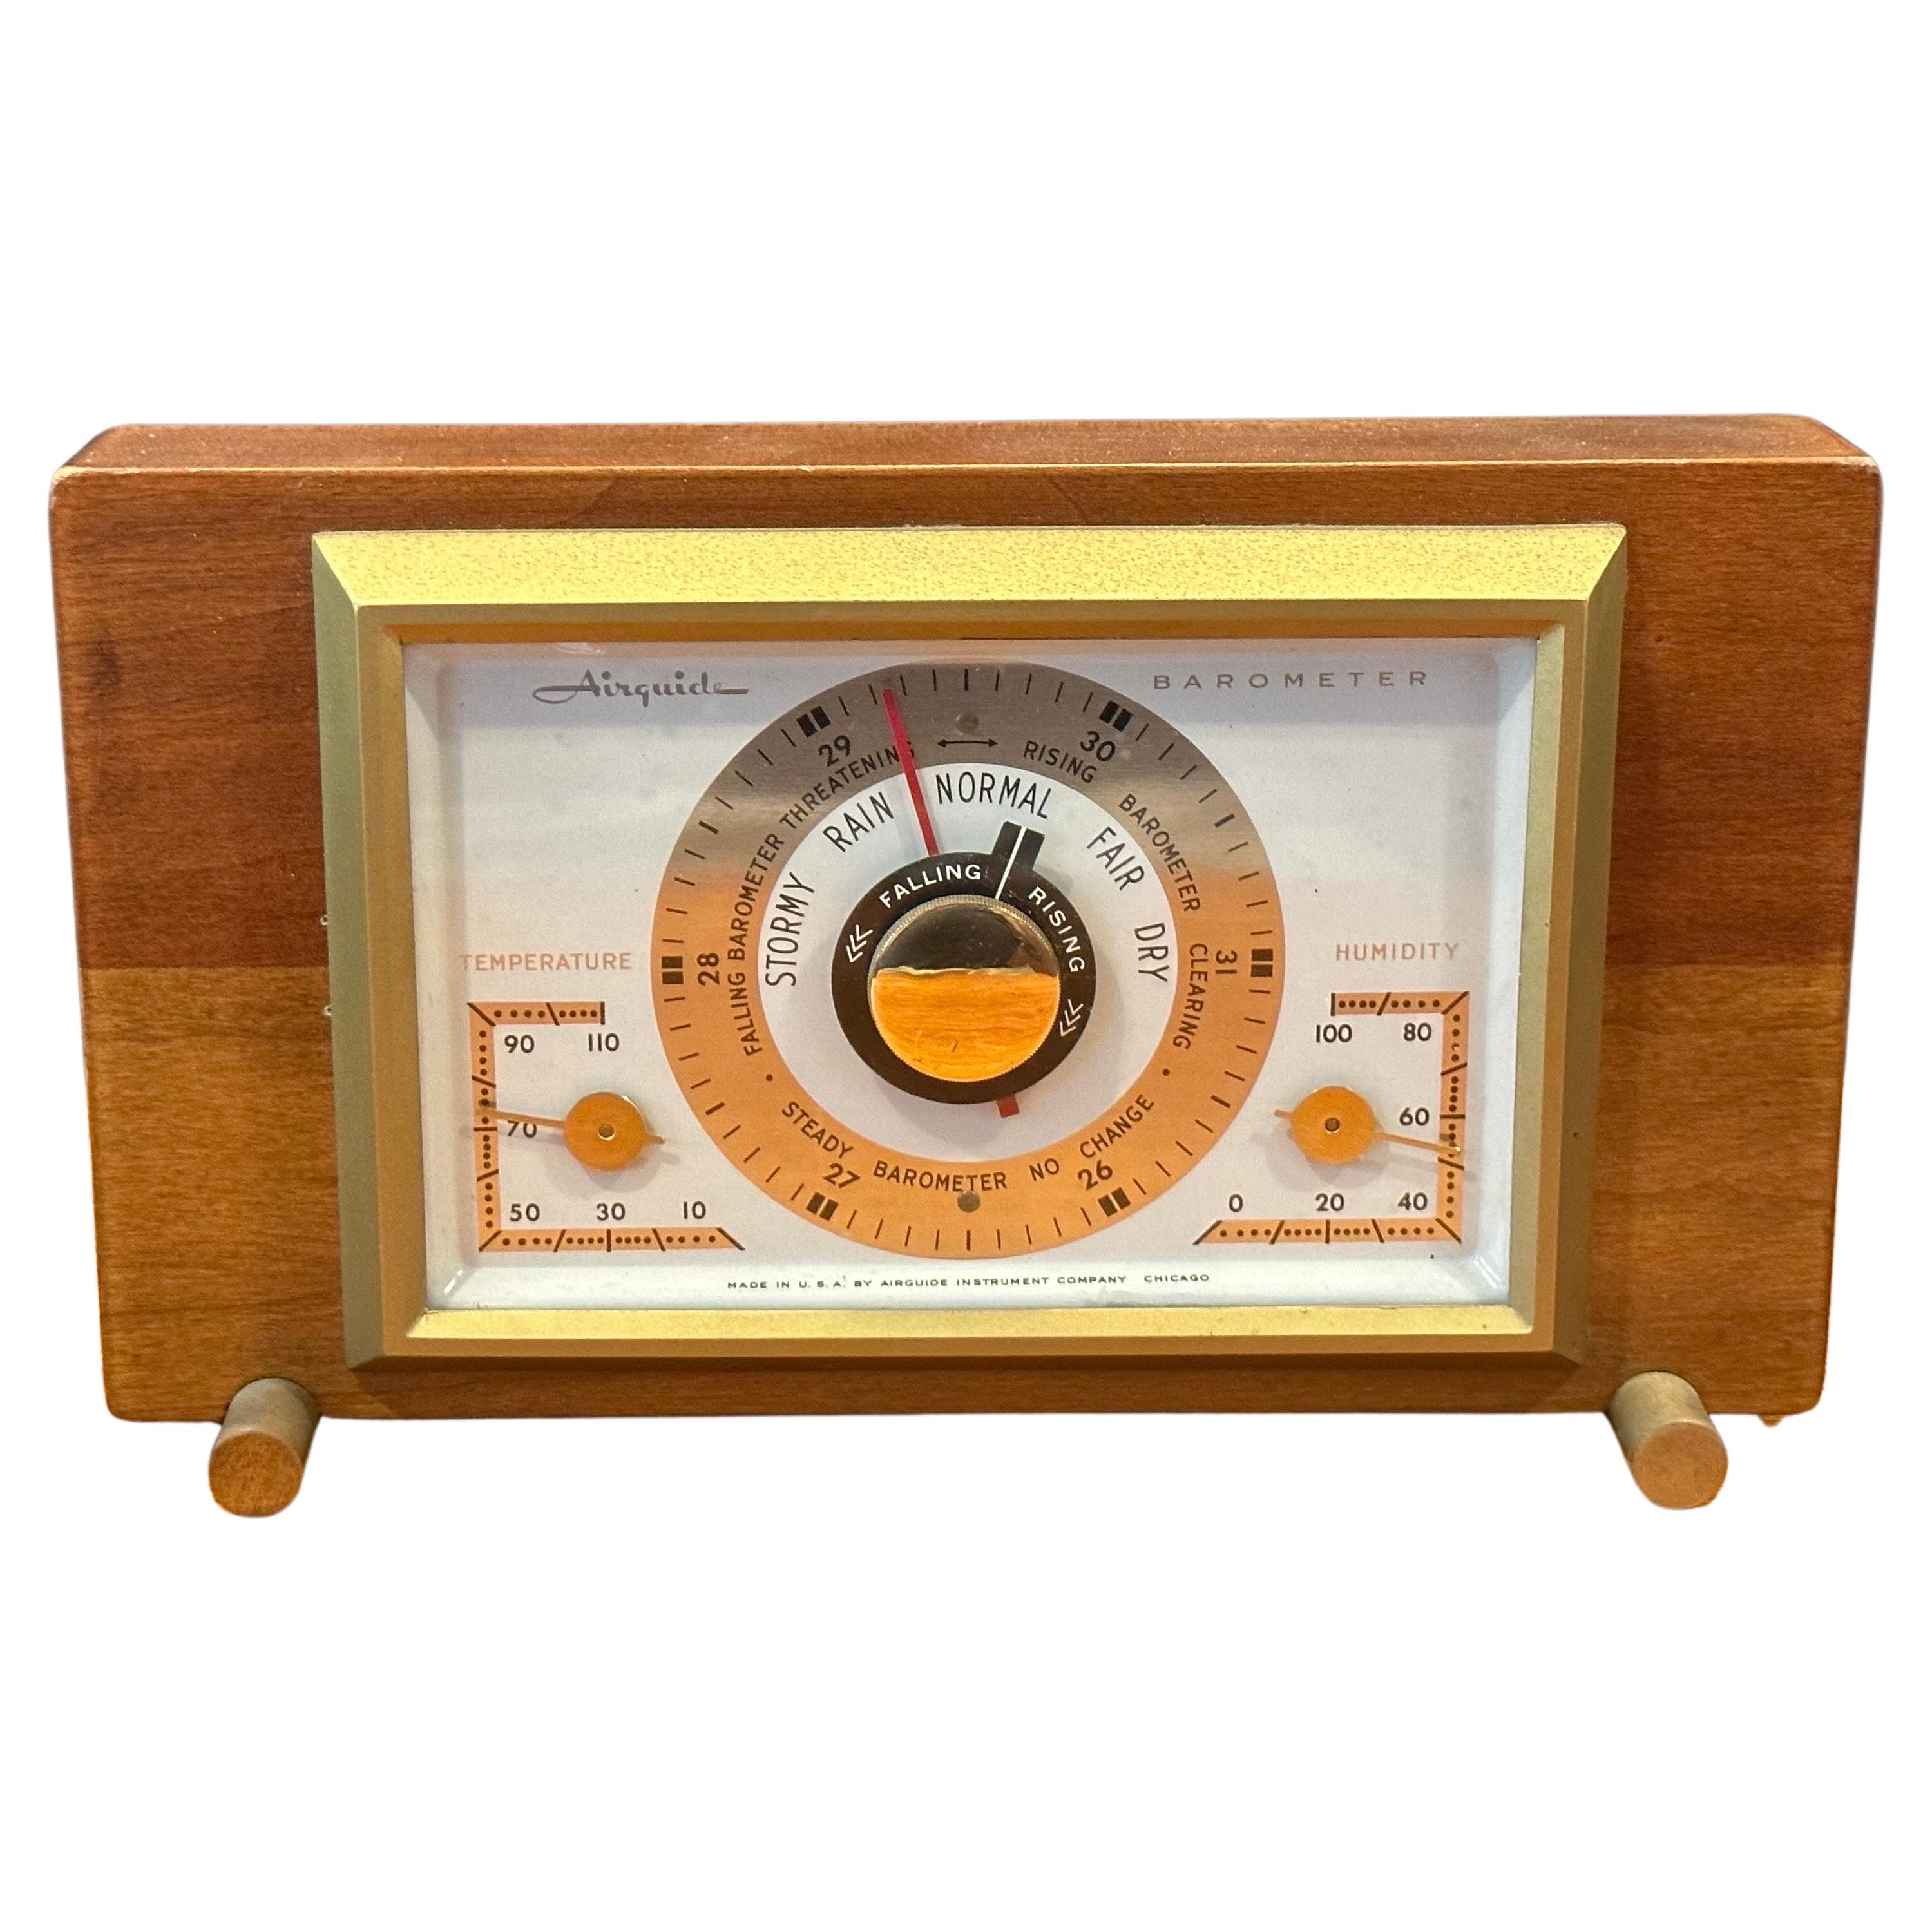 Baromètre de bureau/station météo par Airguide Instrument Company